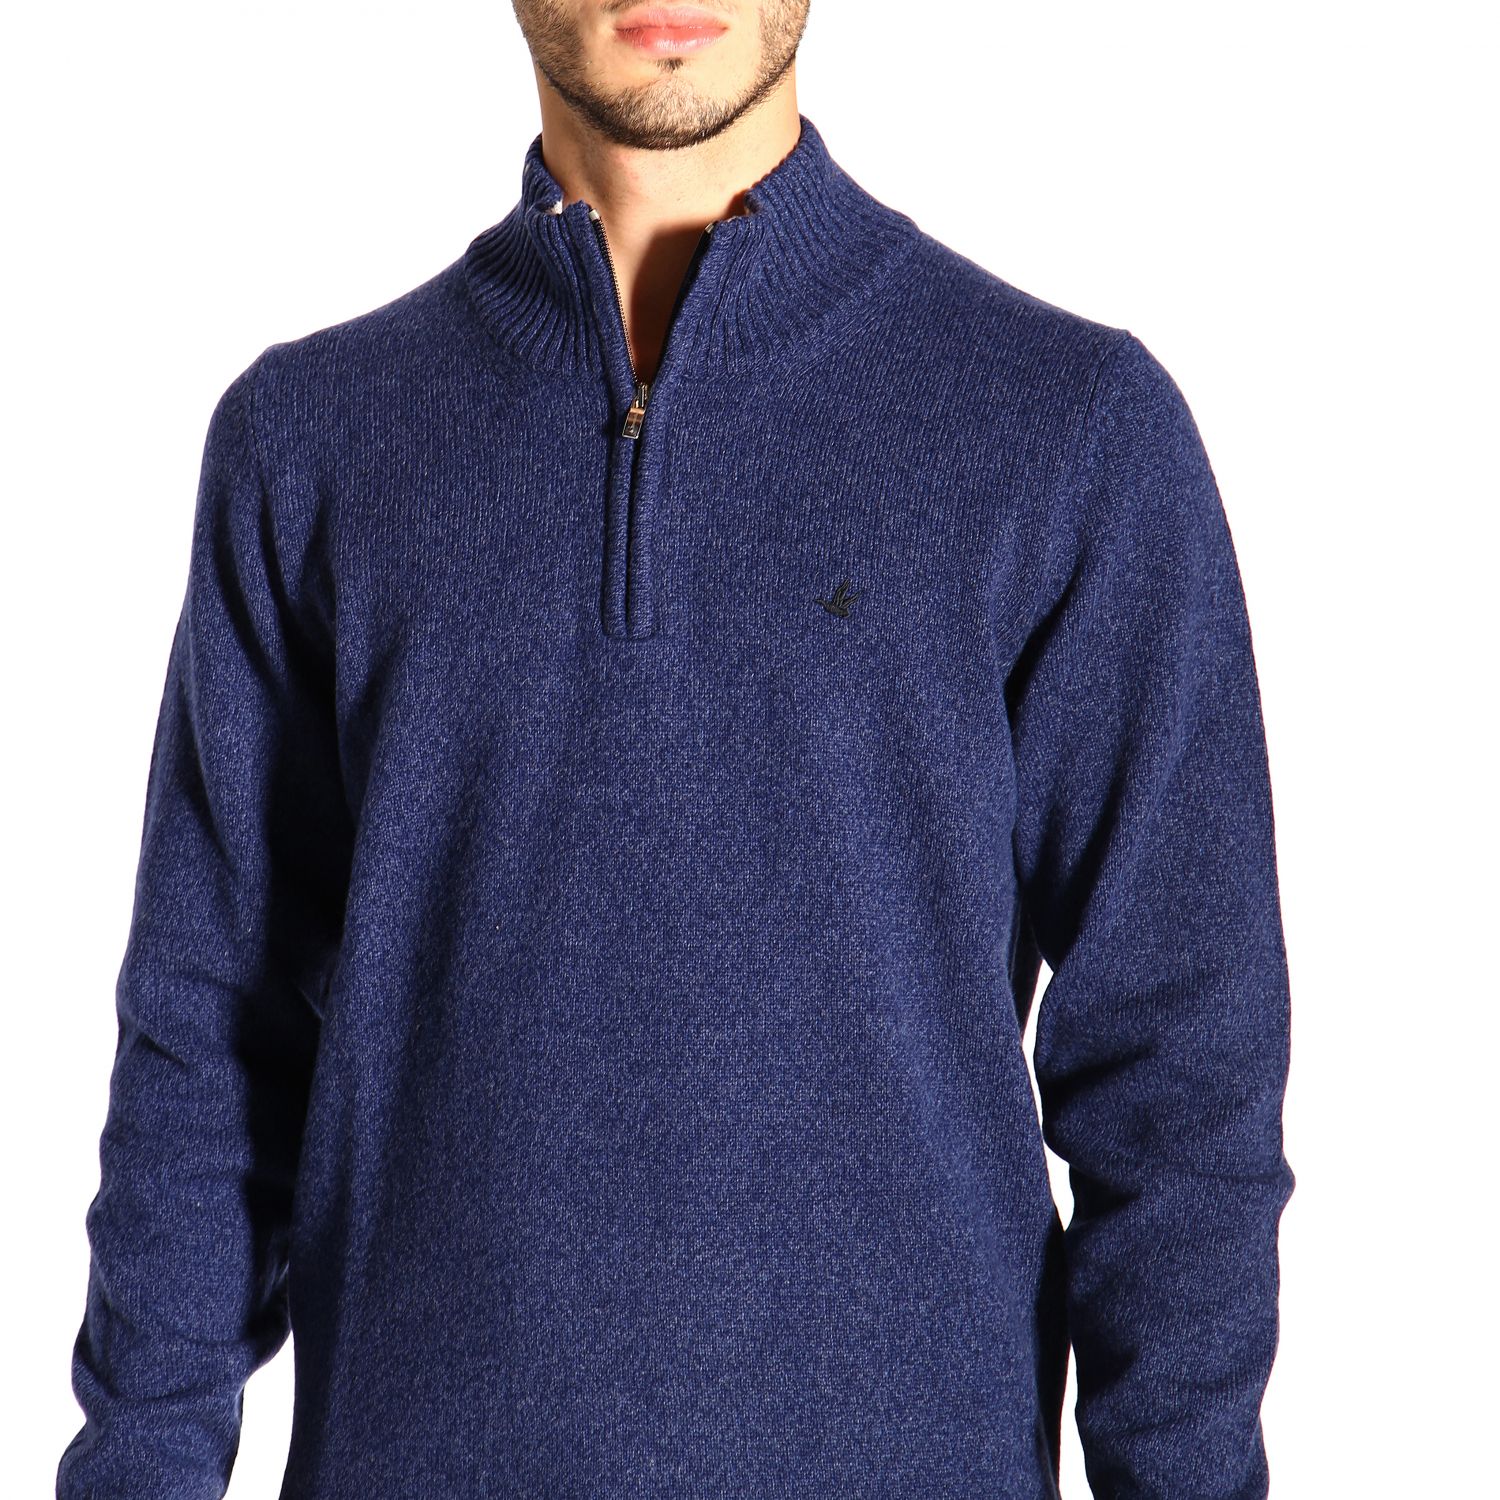 Brooksfield Outlet: Sweater men - Blue | Sweater Brooksfield 203G K021 ...